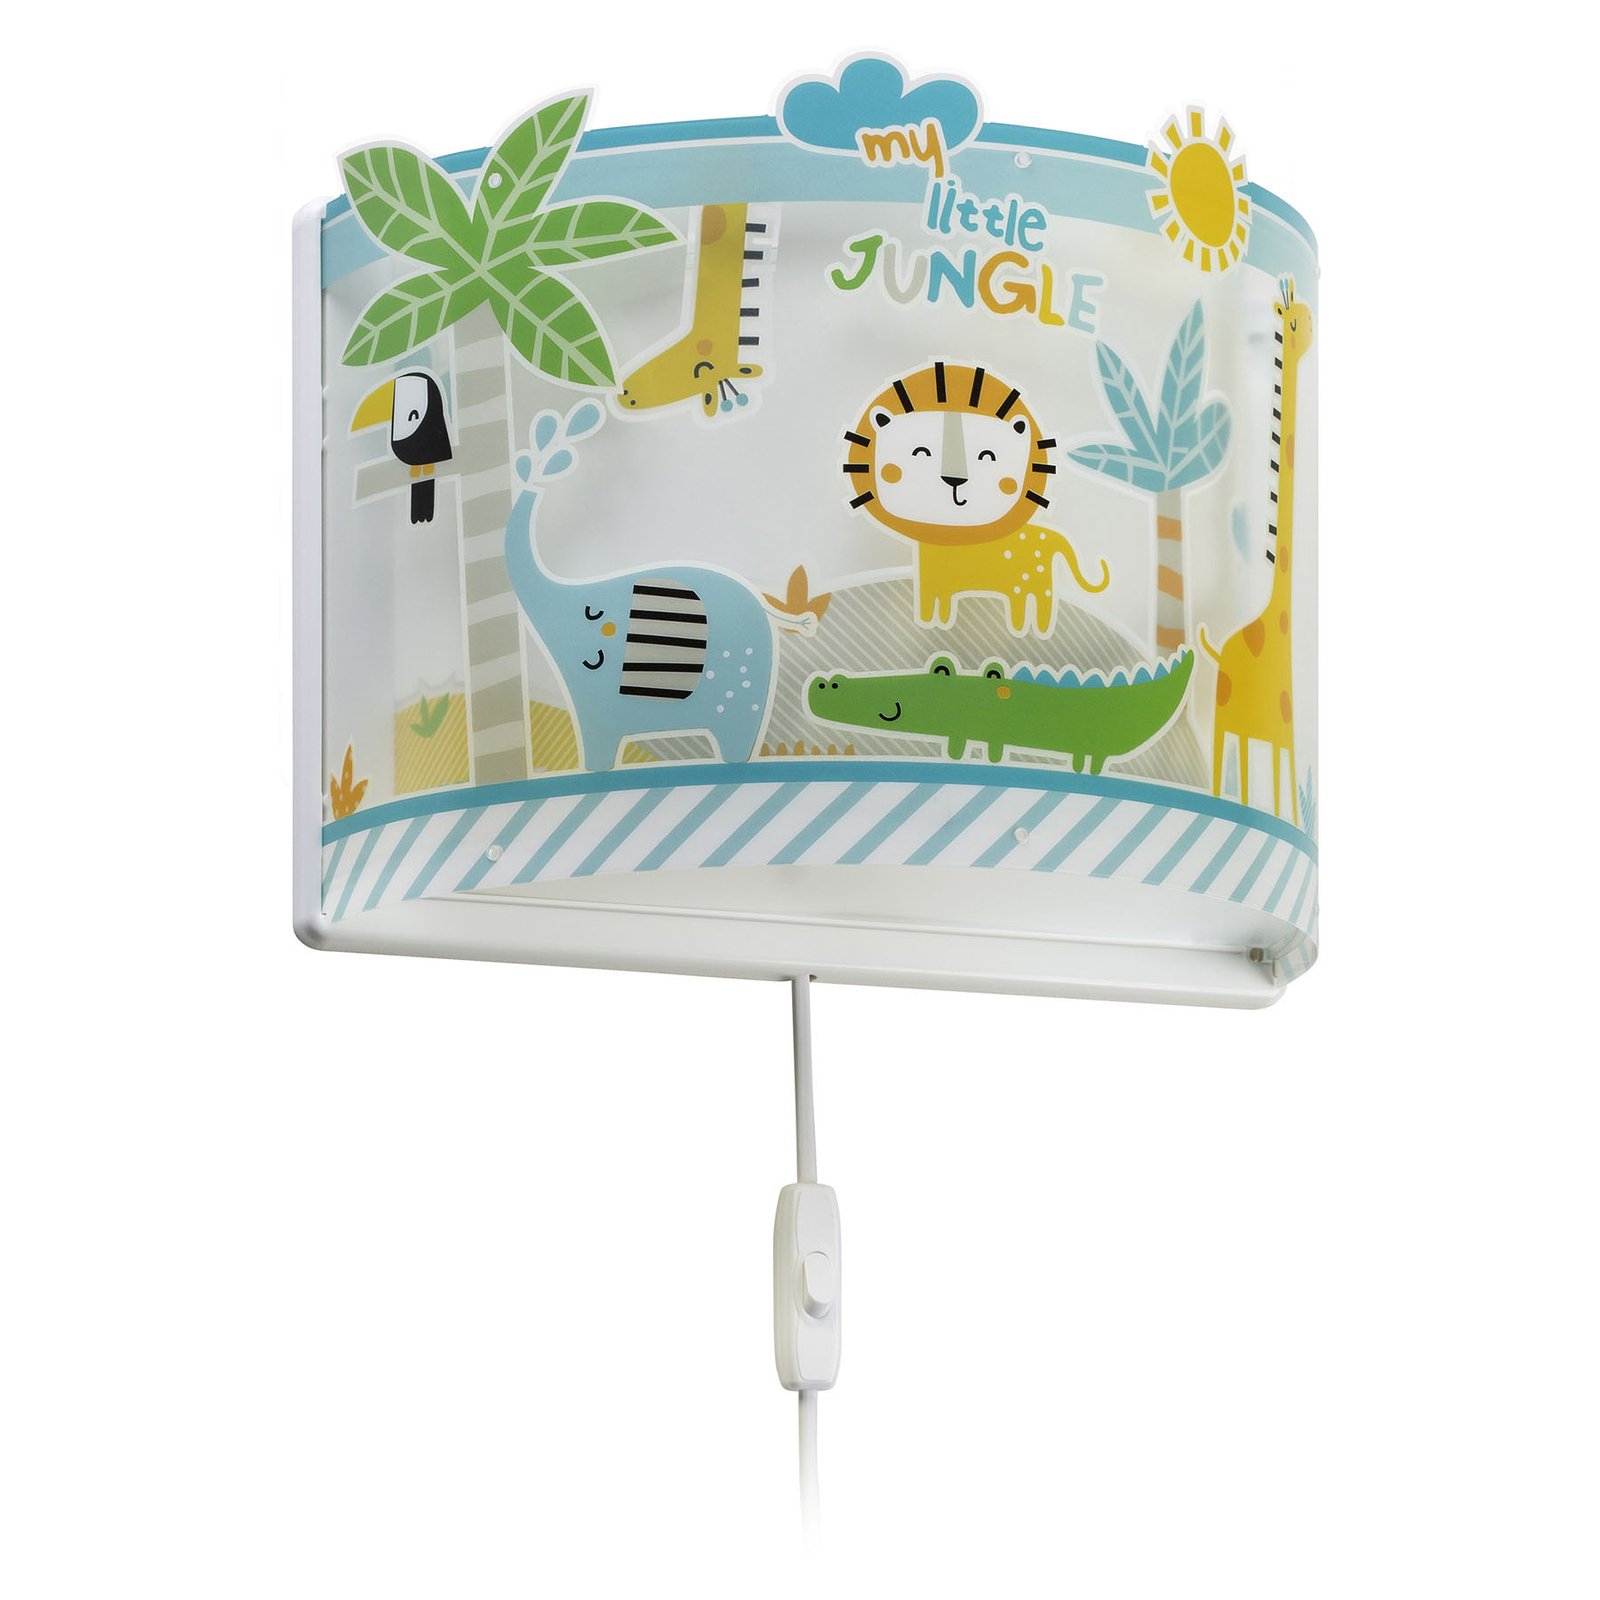 Little Jungle wandlamp voor kinderen met stekker